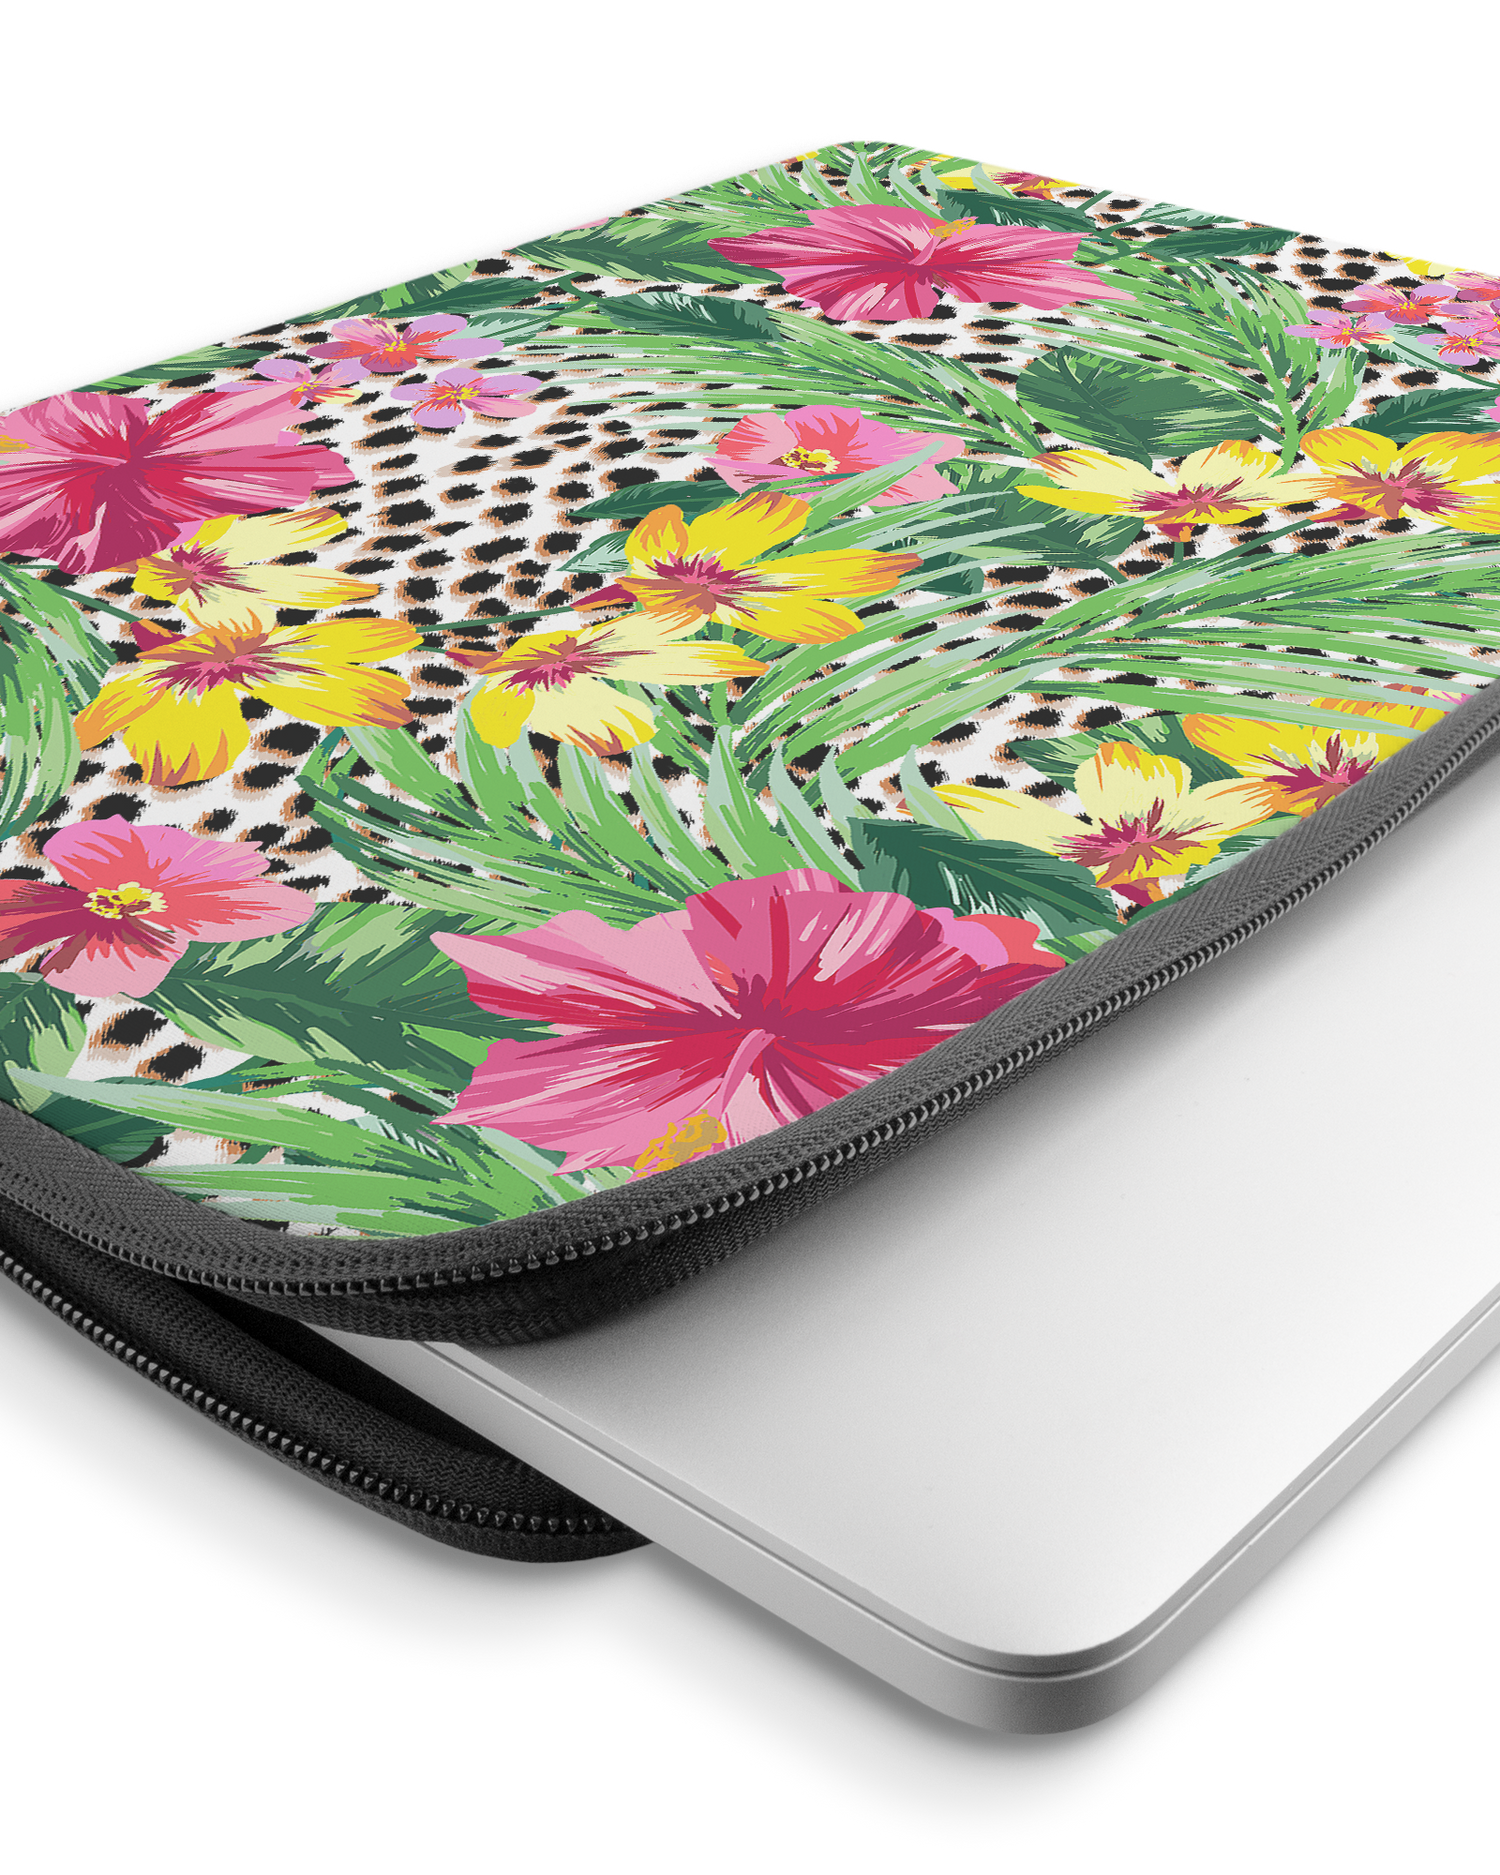 Tropical Cheetah Laptophülle 15-16 Zoll mit Gerät im Inneren